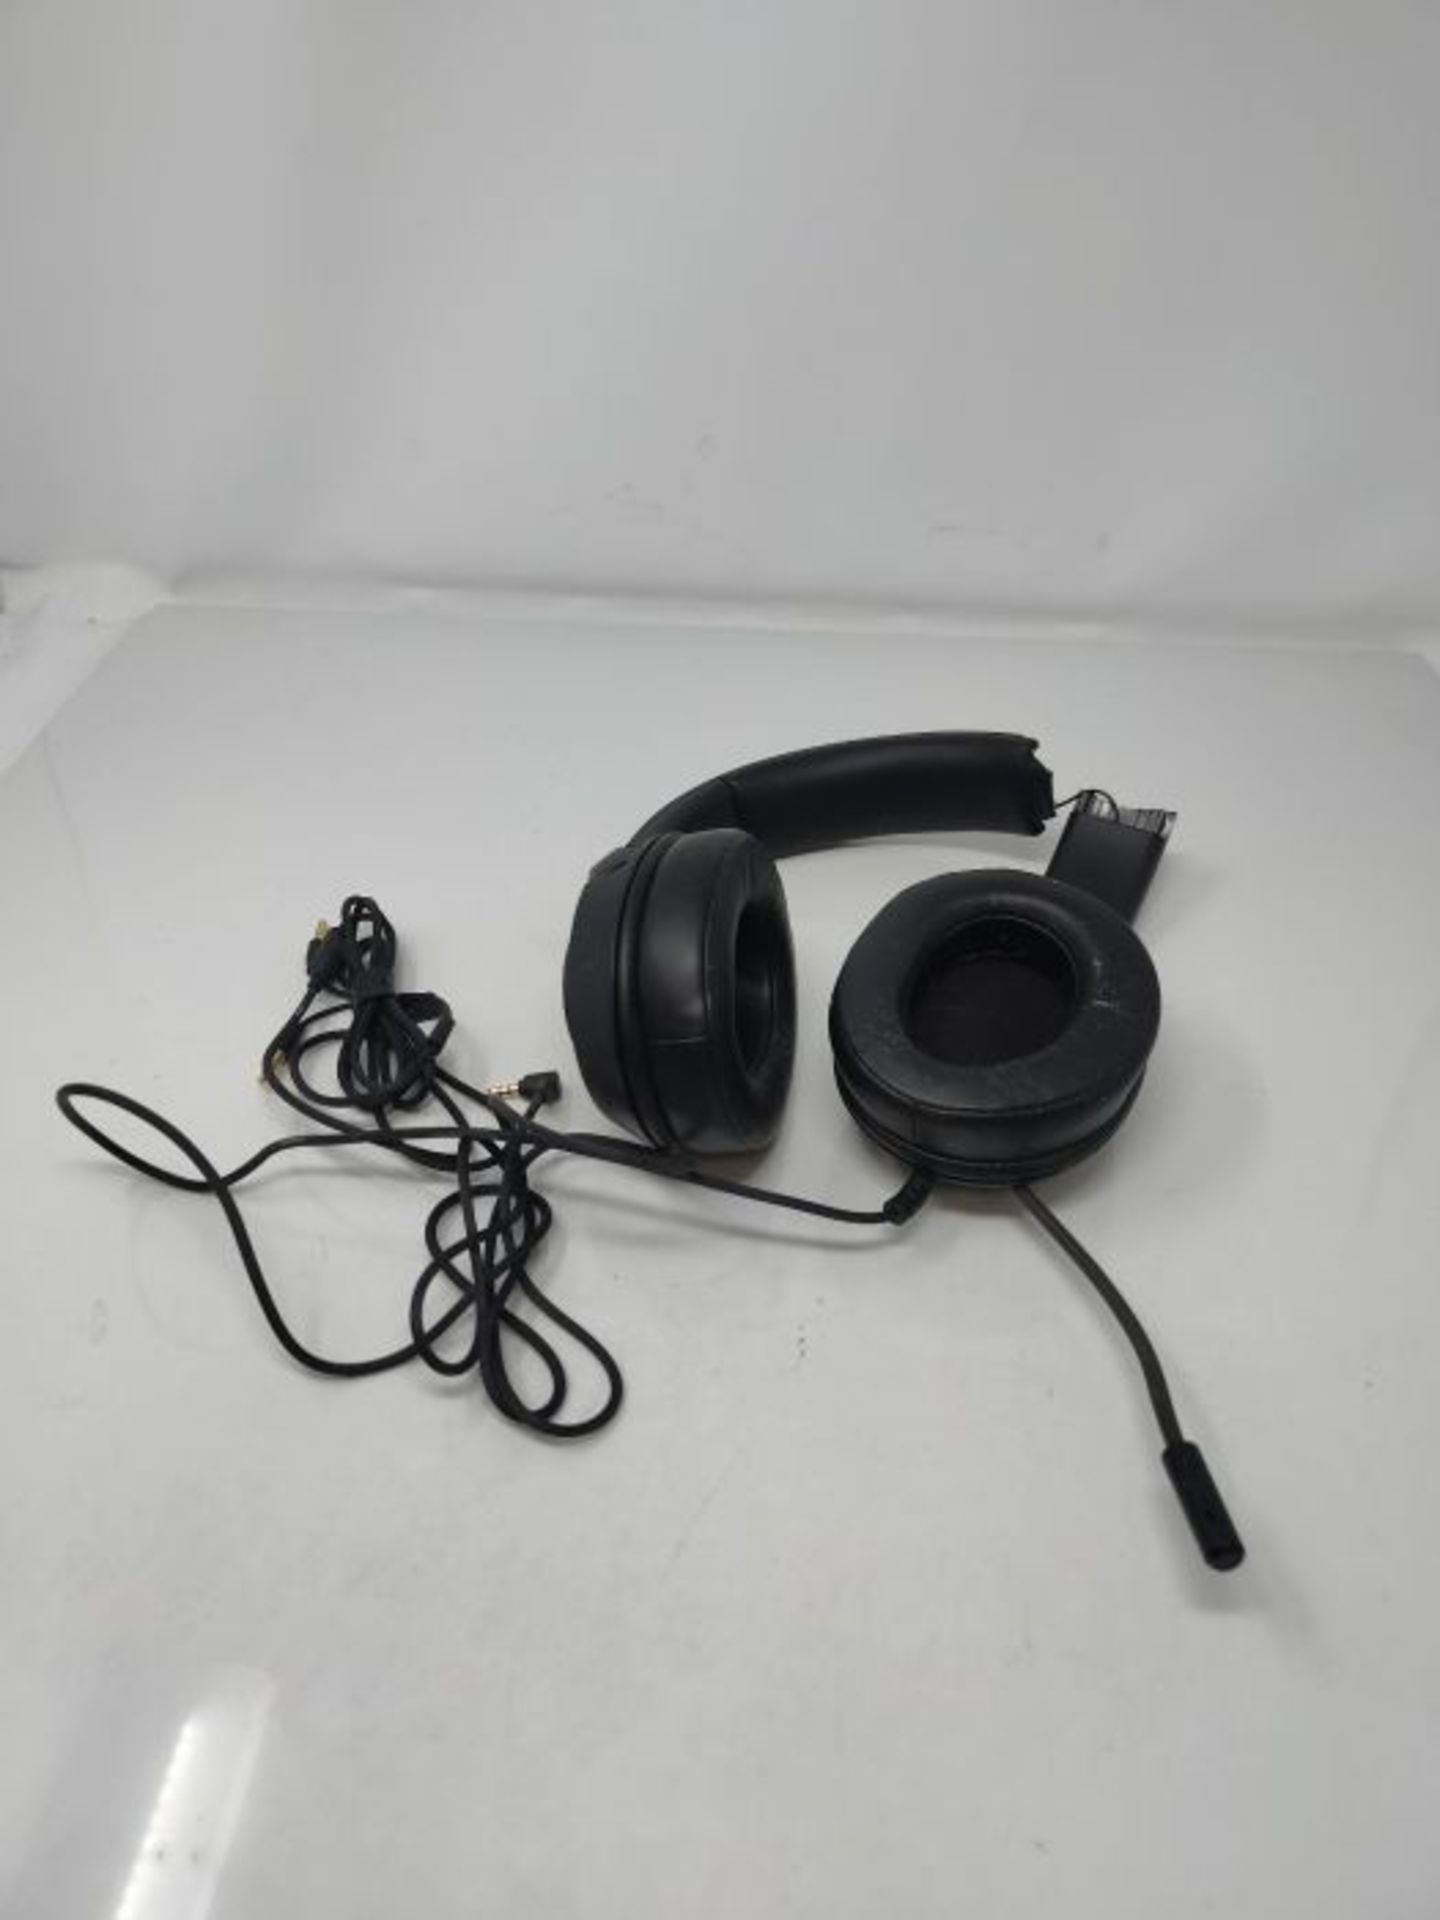 [CRACKED] Razer Kraken X - Gaming Headset (Ultra leichte Gaming Headphones fÃ¼r PC, - Image 3 of 3